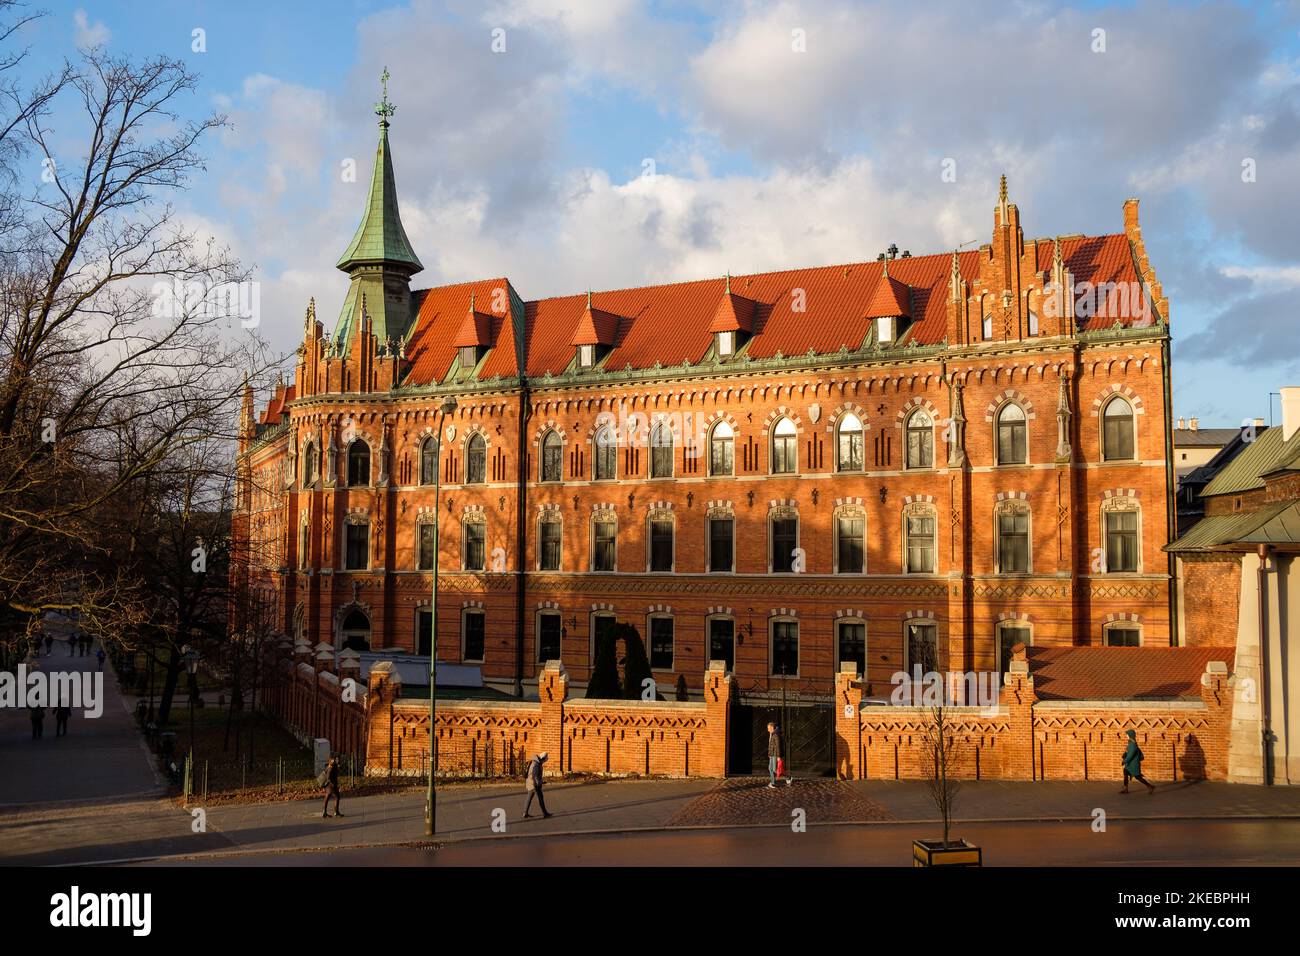 Cracovie Pologne - un vieux bâtiment mis en valeur par le coucher du soleil Banque D'Images